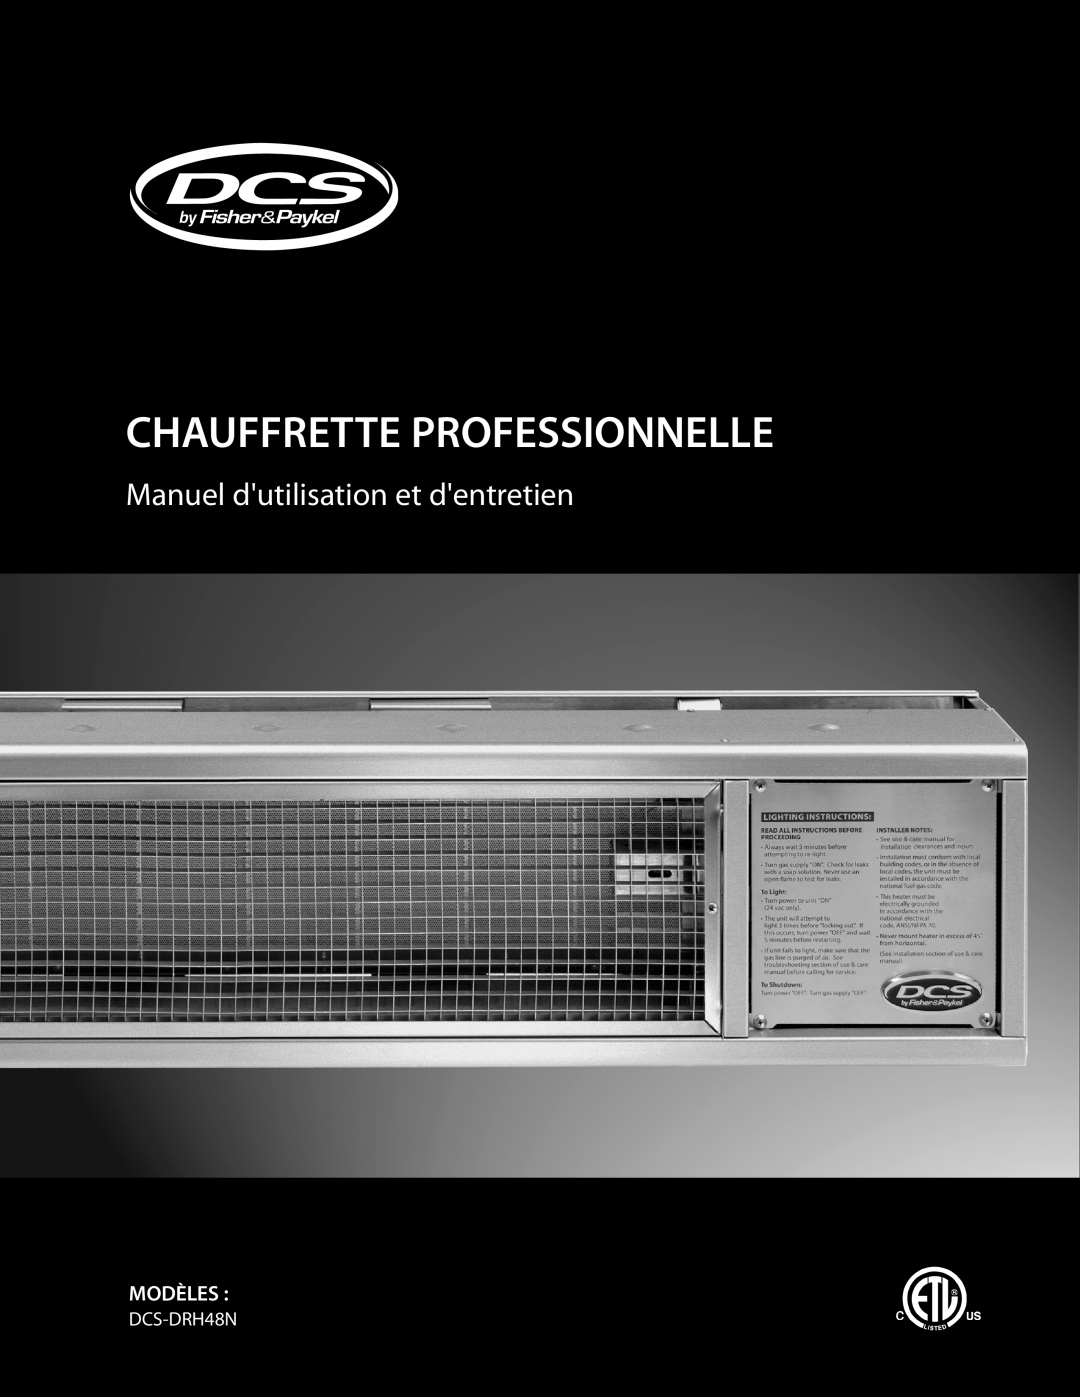 DCS DRH-48N manual Chauffrette Professionnelle, Manuel dutilisation et dentretien, Modèles, DCS-DRH48N 